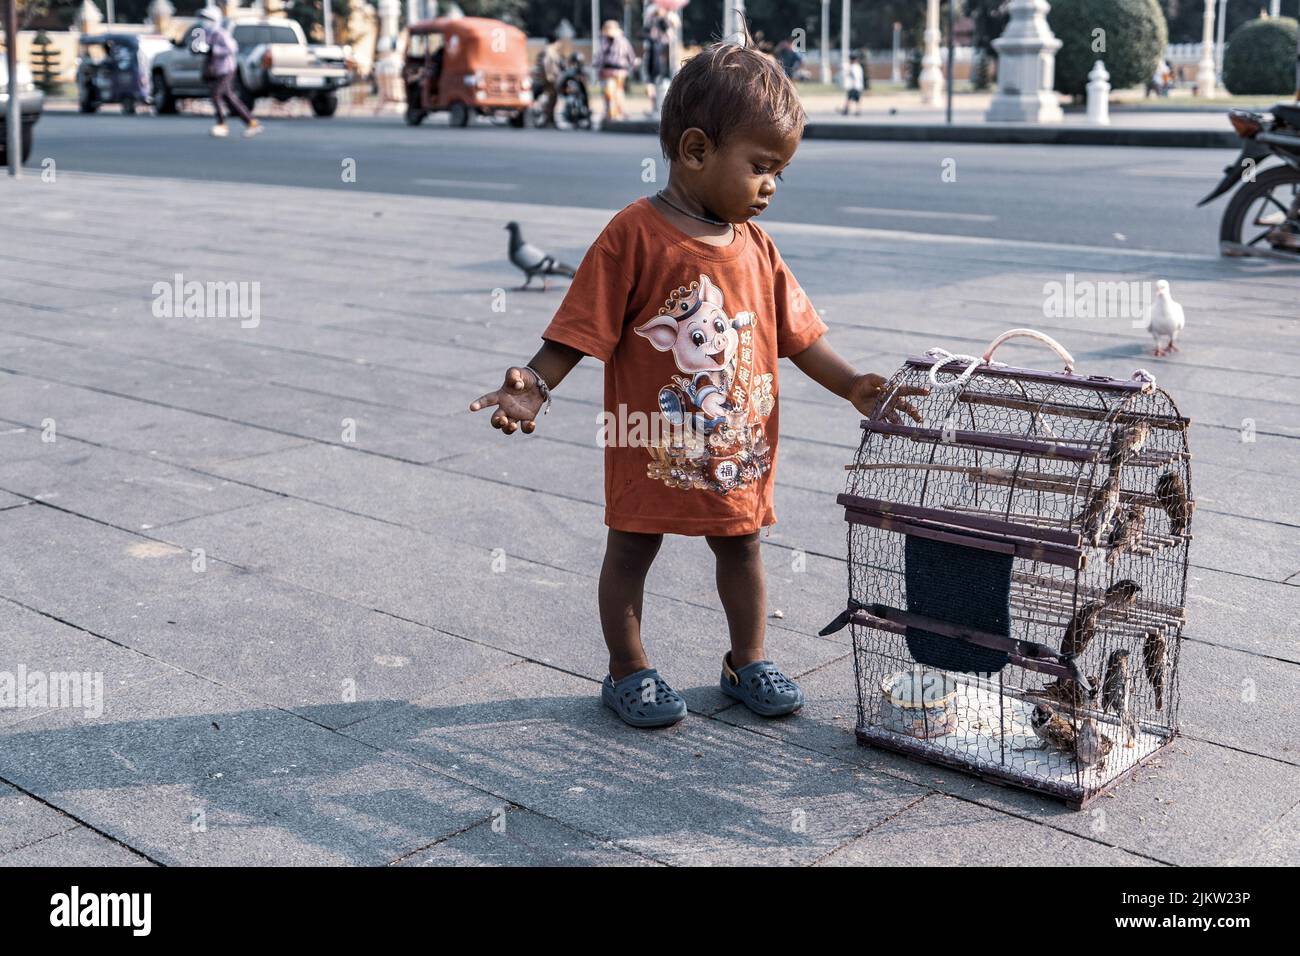 Un bambino che gioca con gli uccelli desiderosi, tenuto in gabbie vicino ai santuari, un rituale chiamato 'merit libering' Foto Stock